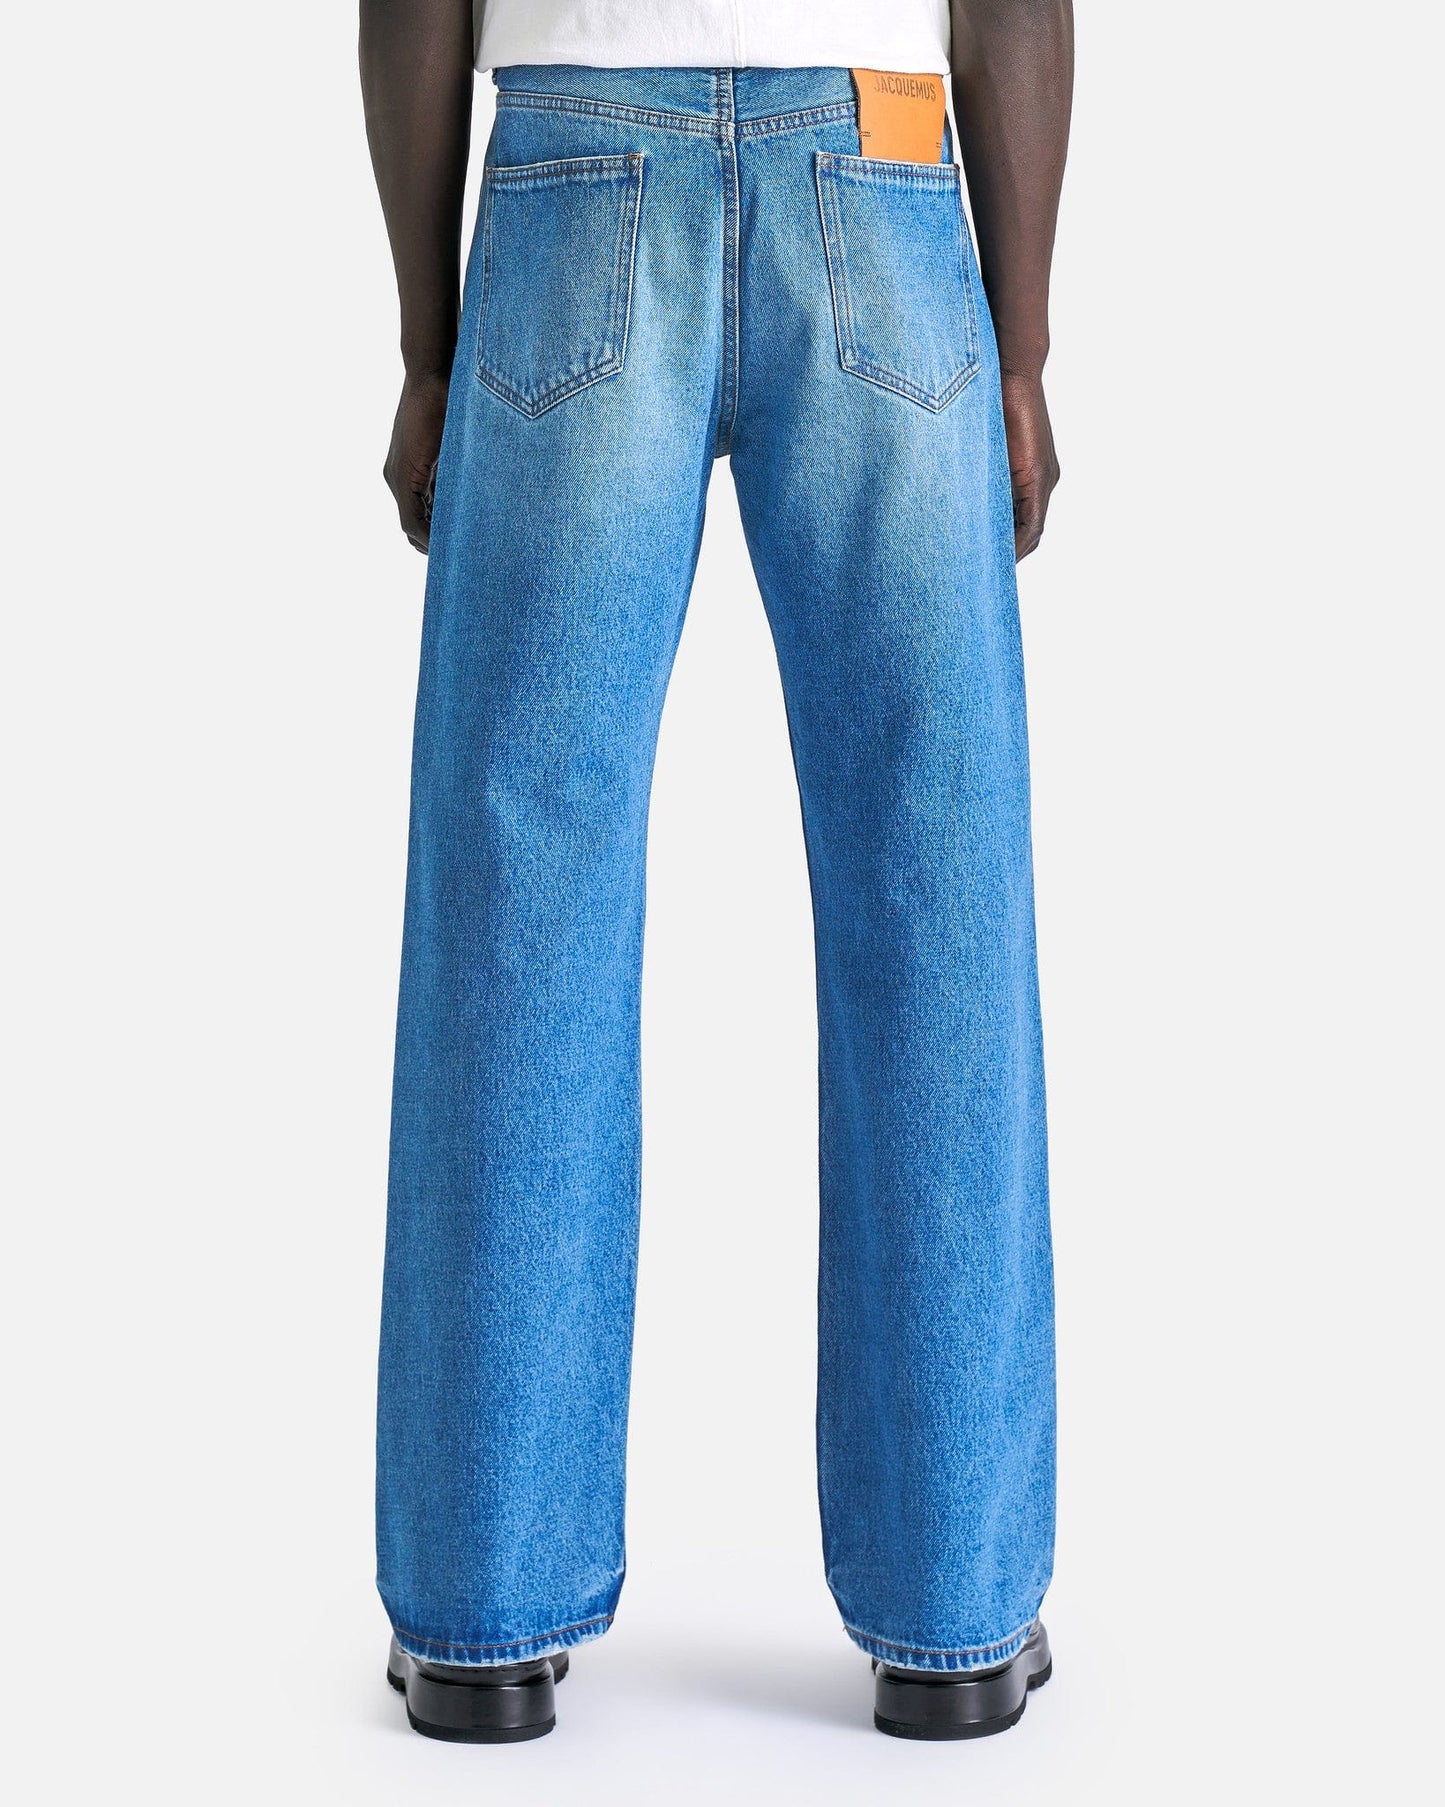 Jacquemus Men's Jeans Le De Nimes Droit in Blue/Tabac 2